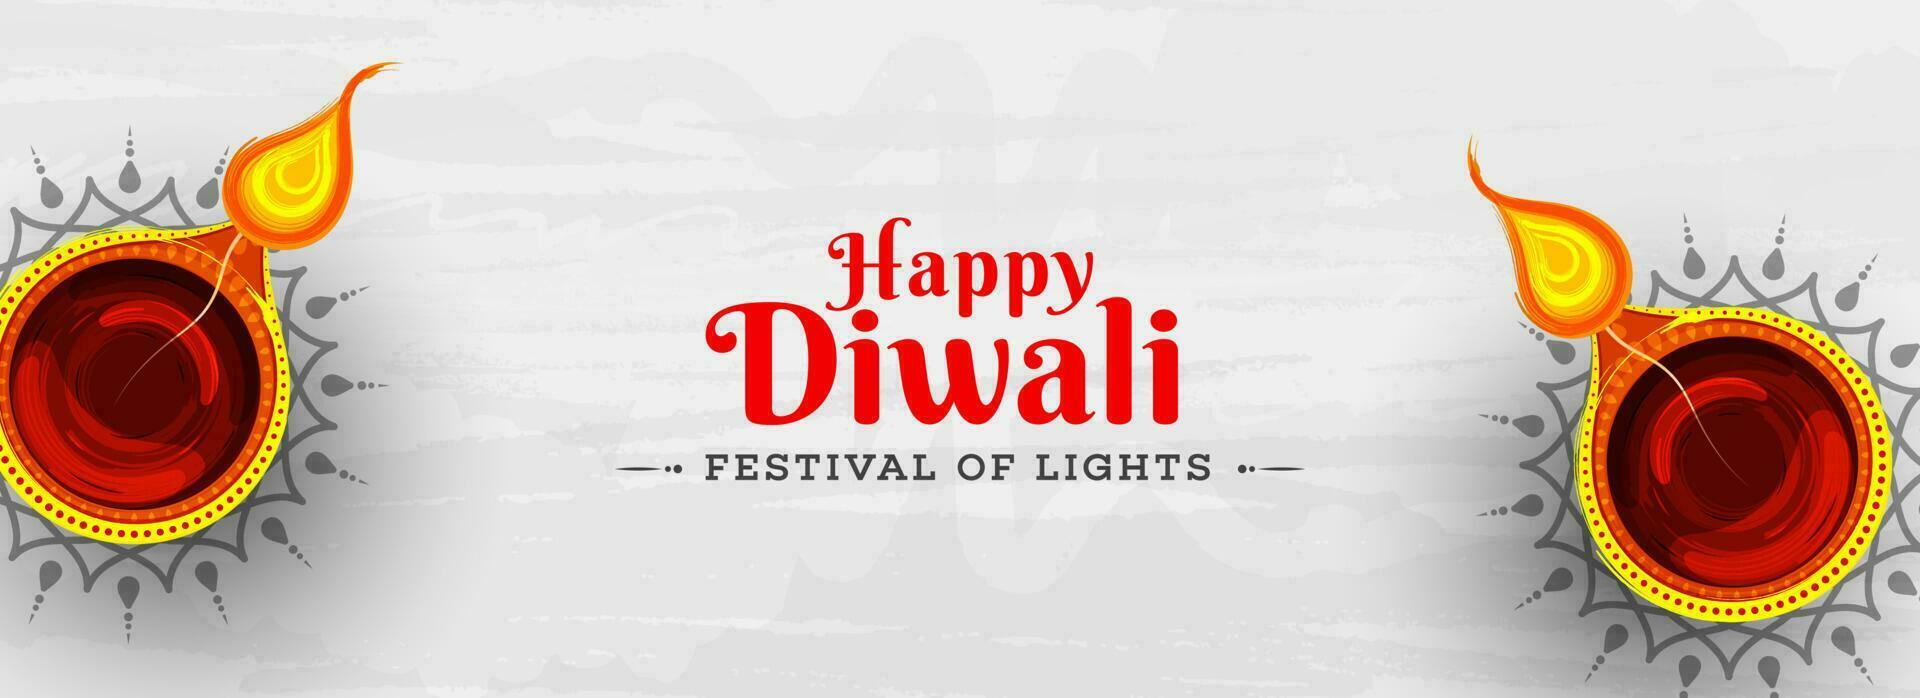 Festival von Beleuchtung Feier, glücklich Diwali Header oder Banner Design mit oben Aussicht von Hand gezeichnet Öl Lampen auf grau Textur Hintergrund. vektor